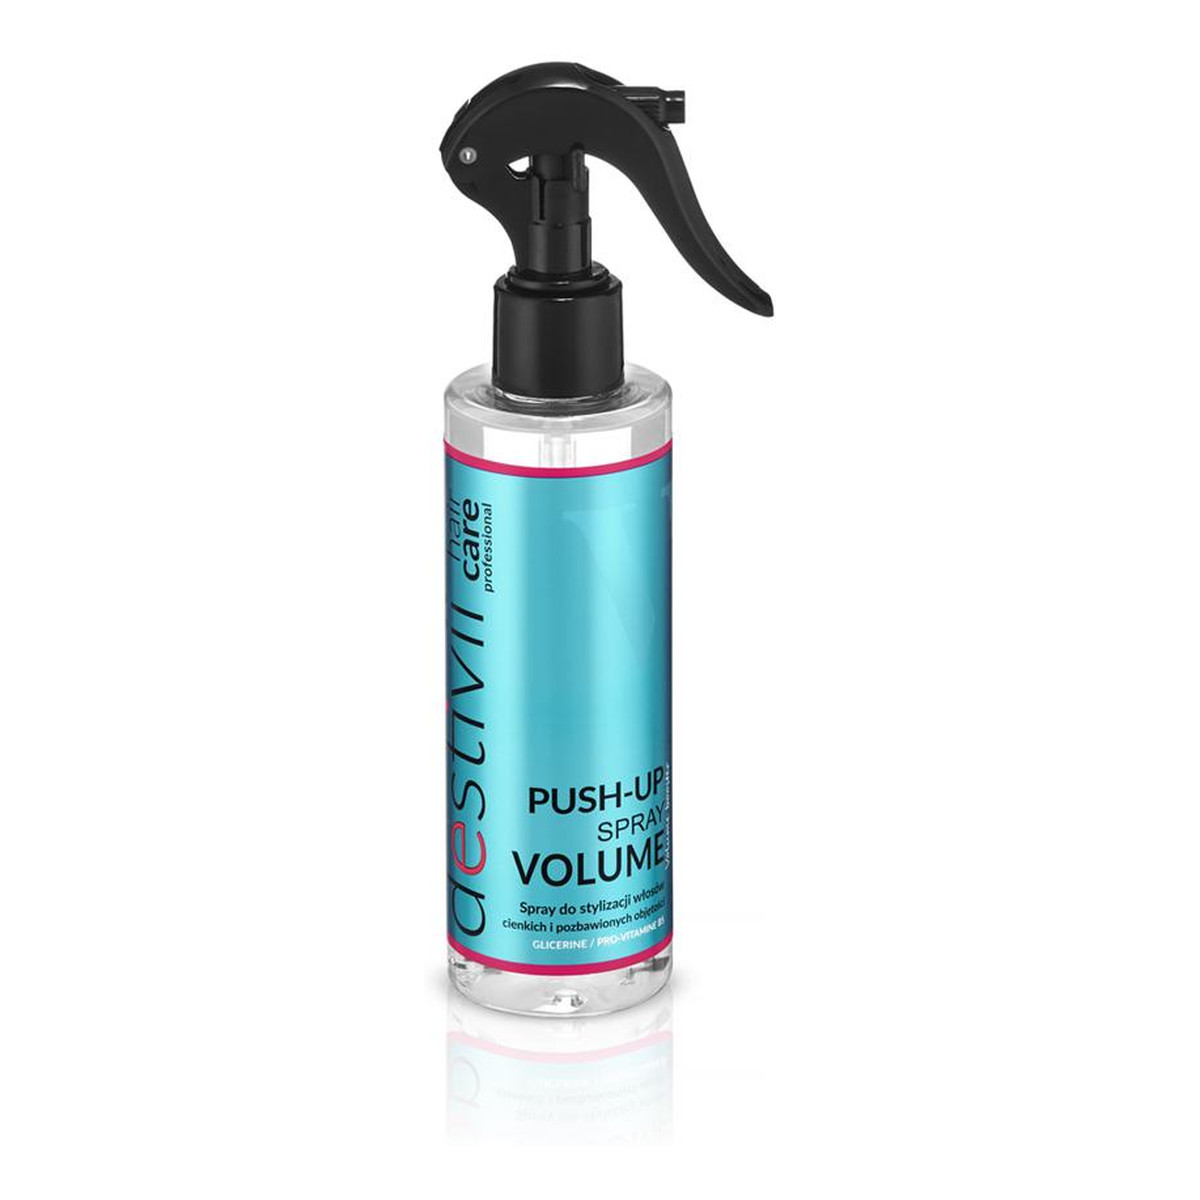 Destivii Push-Up Spray Volume Spray do stylizacji włosów cienkich i pozbawionych objętości 200ml